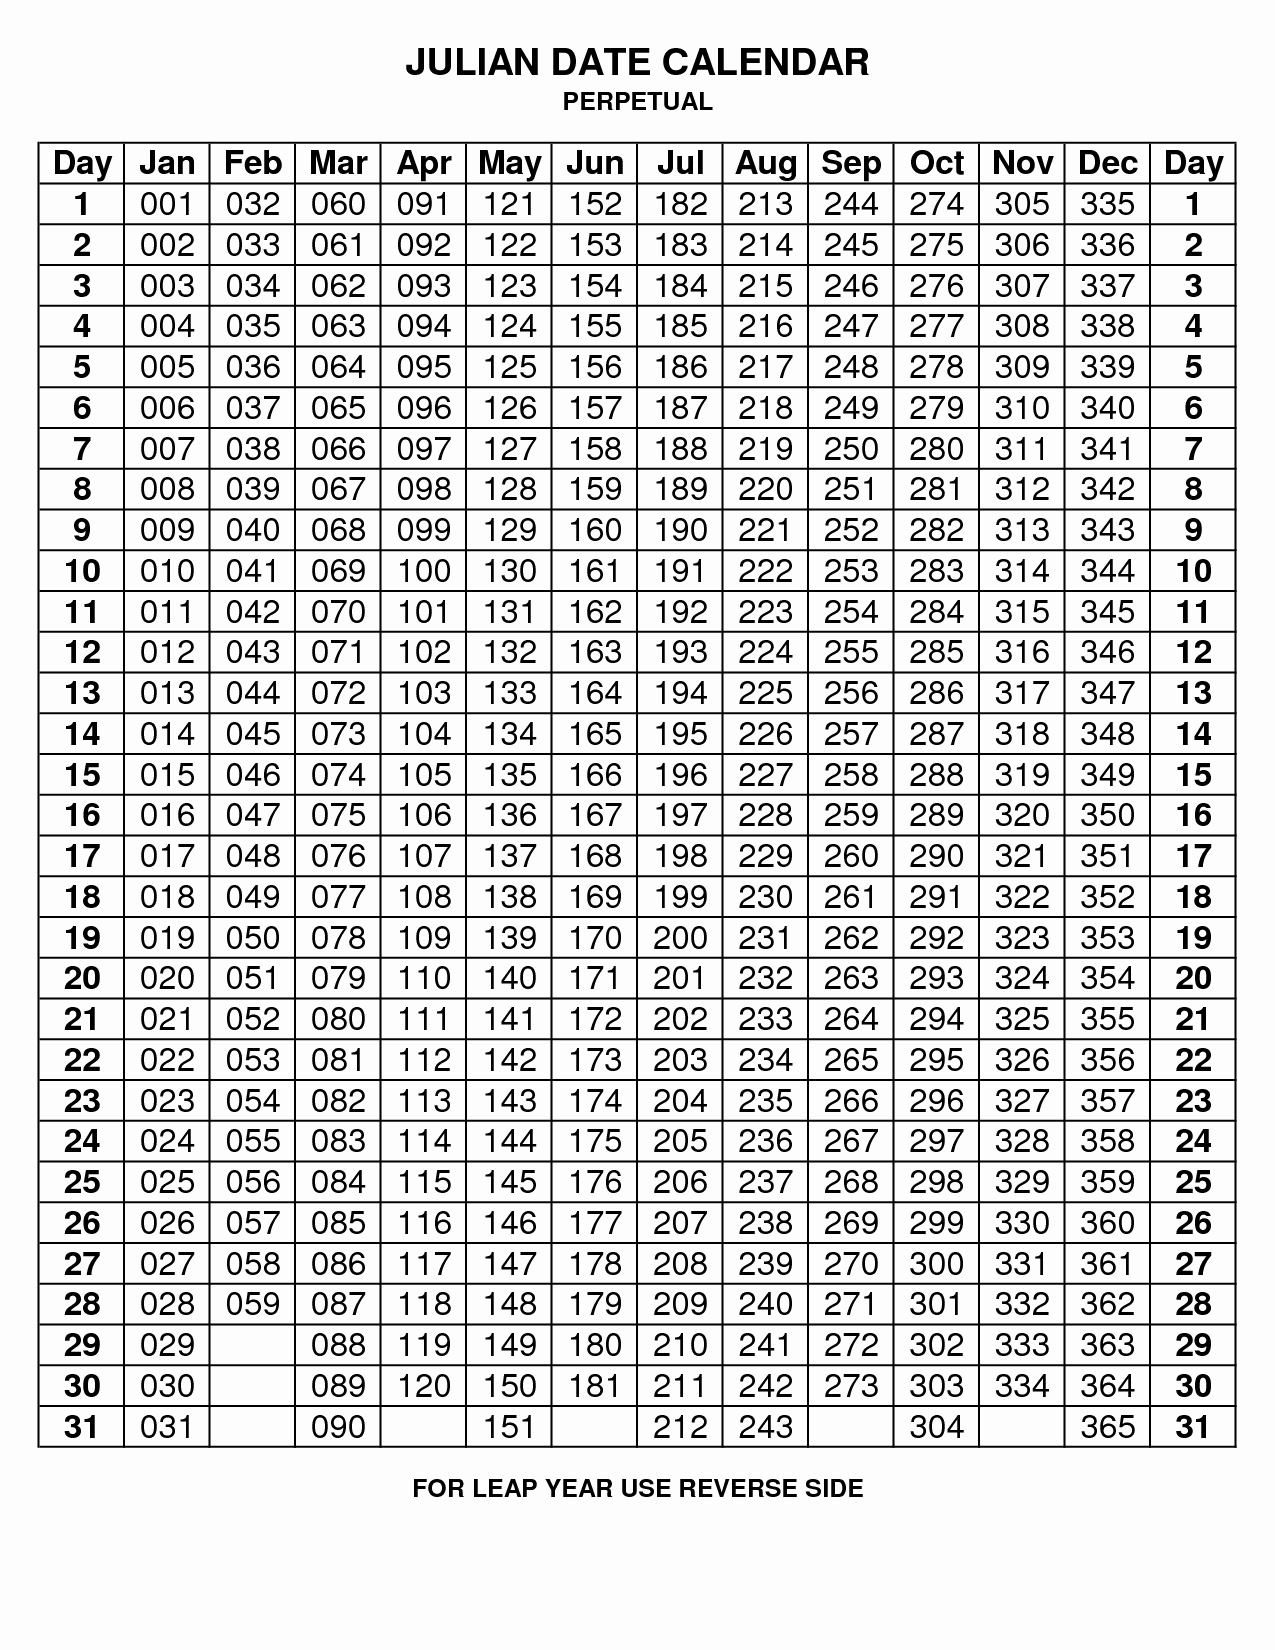 Depo Provera Perpetual Calendar To Print - Calendar  Depo Shot Schedule 2021